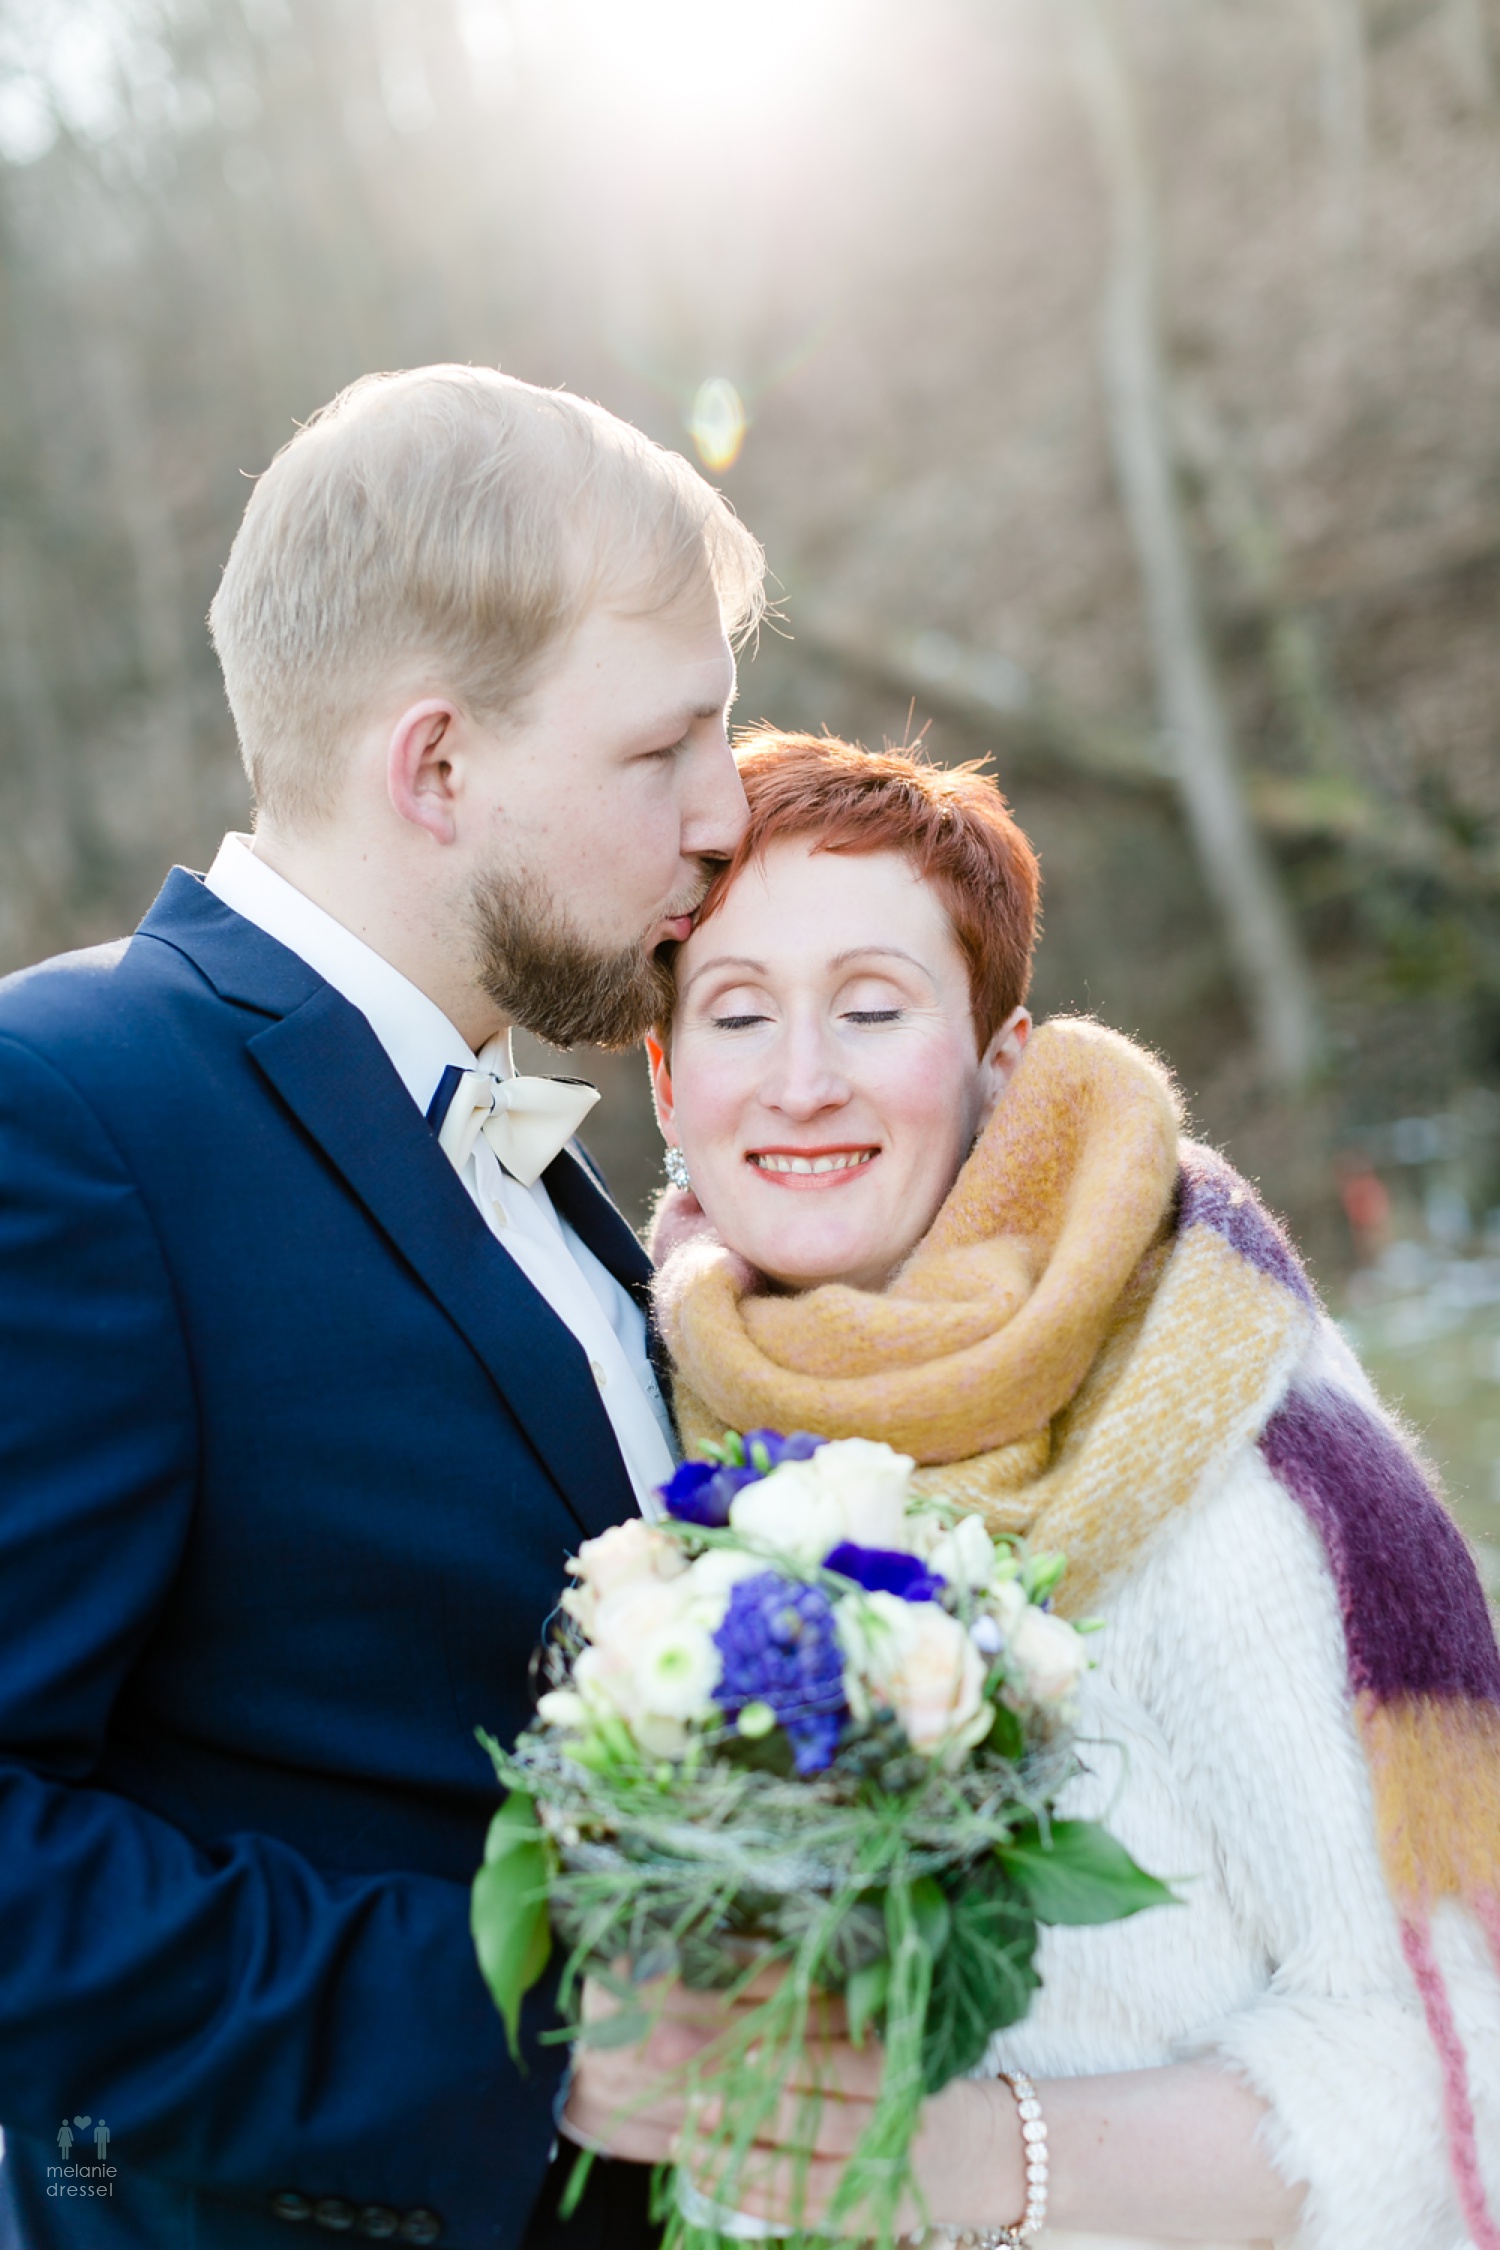 Karl küsst seine Braut Evelyn während Ihrer Hochzeit in Gera